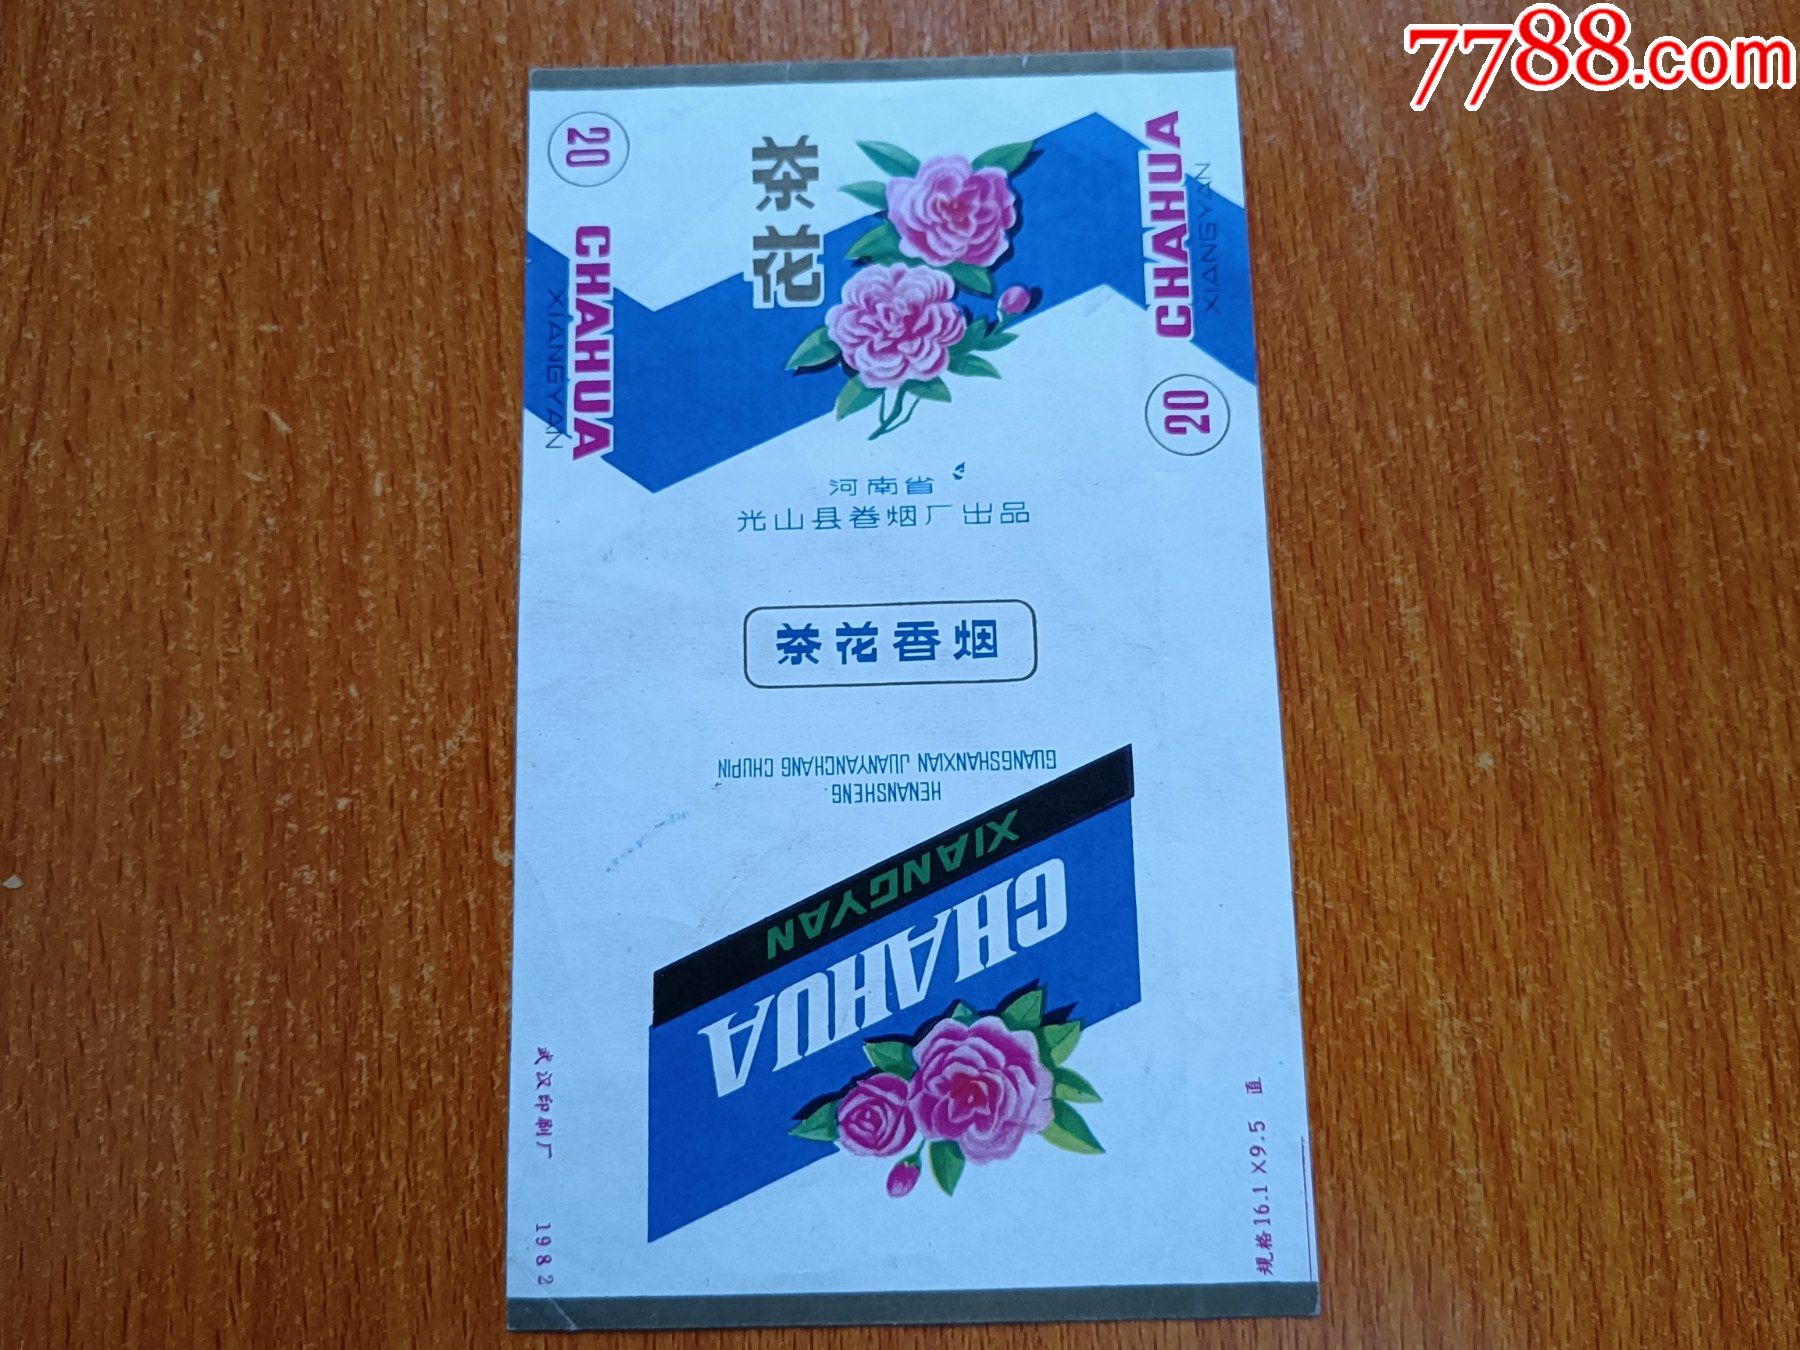 光山厂茶花70s三无标河南省光山县卷烟厂